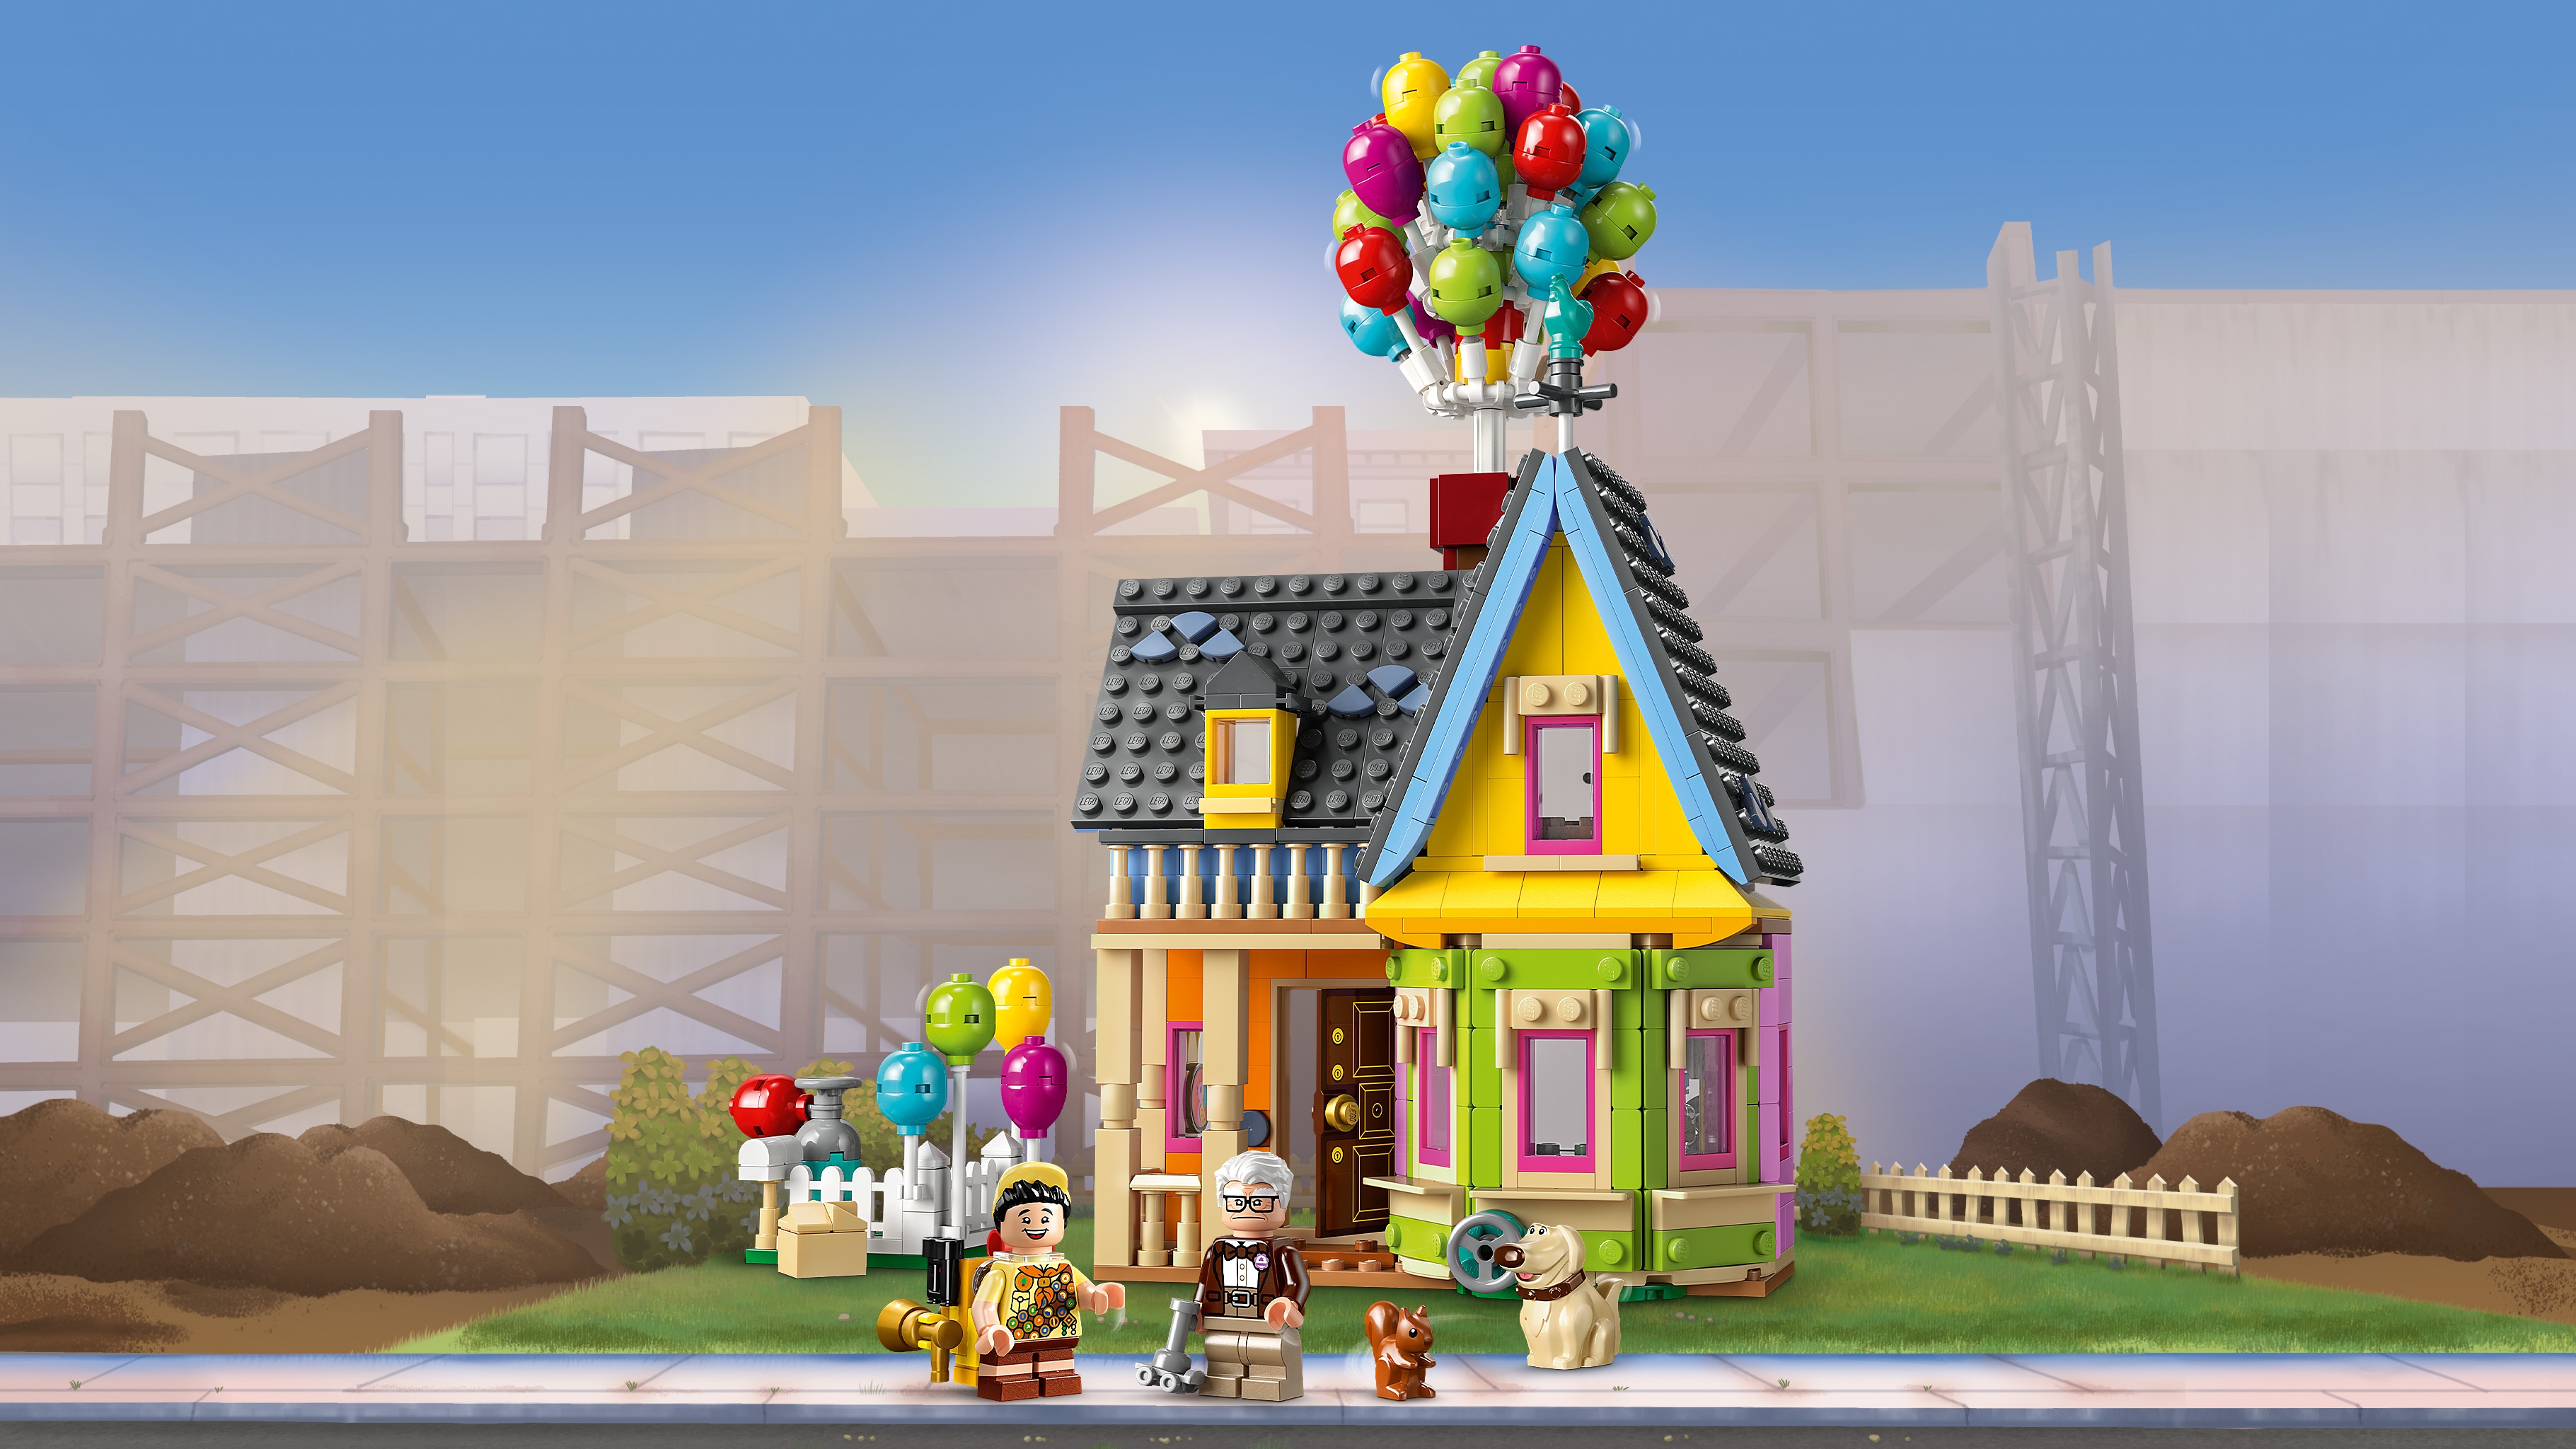 Up' House - Videos - LEGO.com for kids